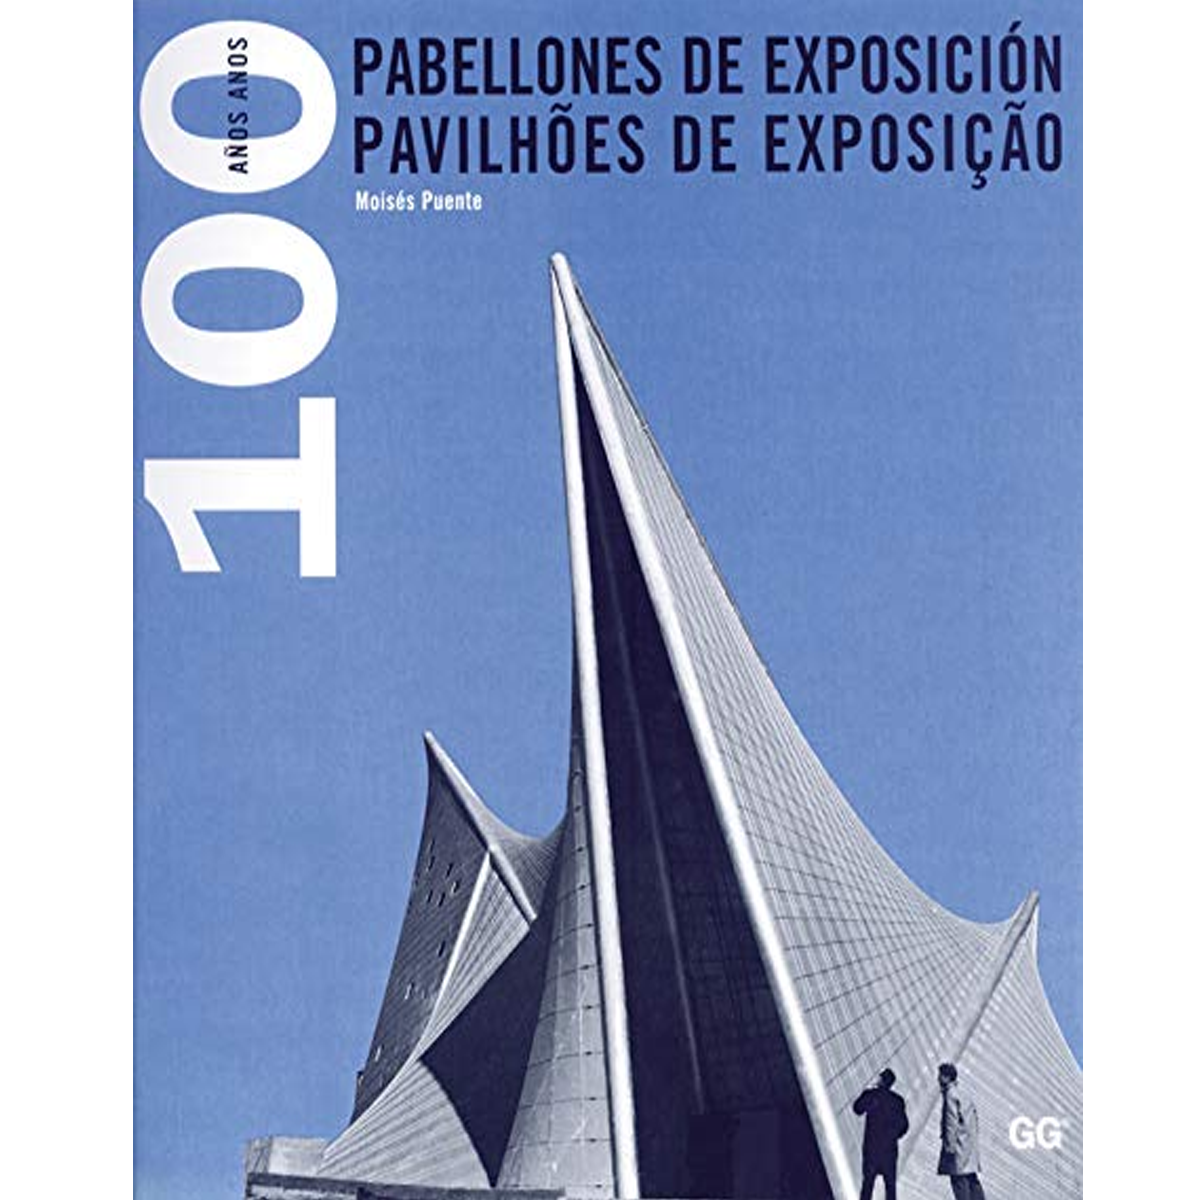 Pabellones de exposición: 100 años